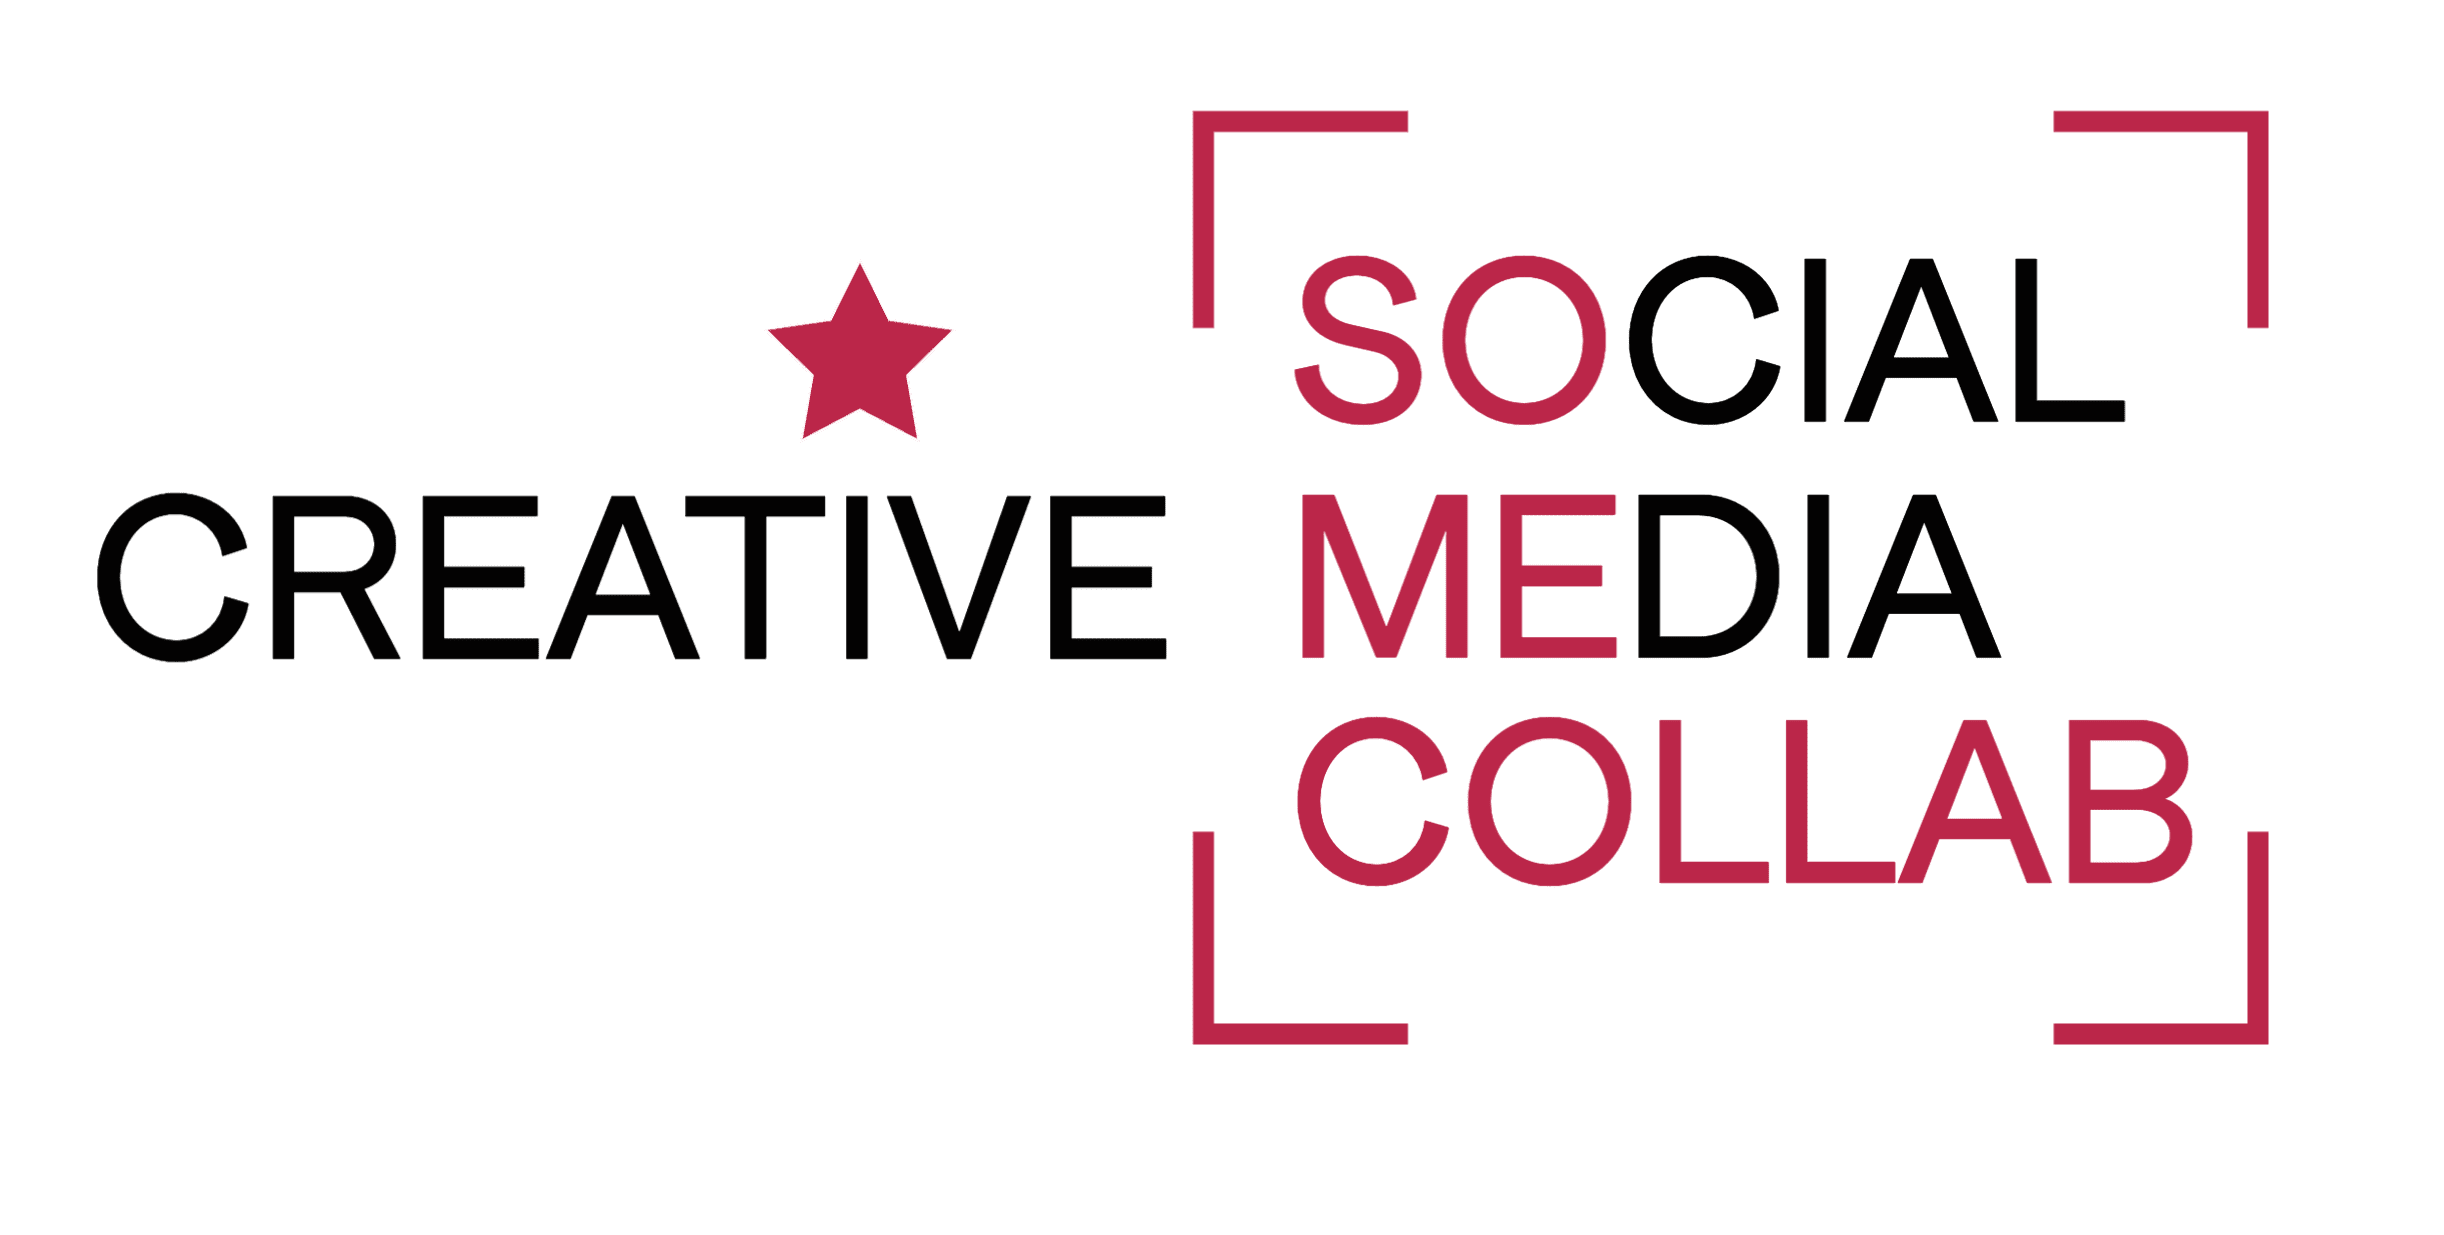 Creative social media colla - L'AGENCE DE PUB